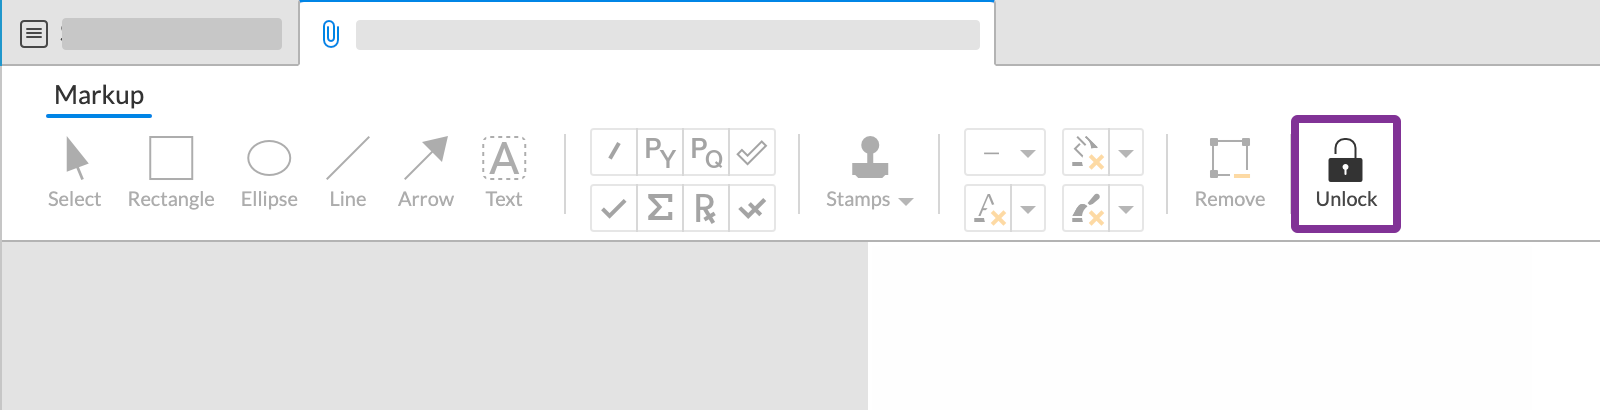 icono de desbloqueo de ediciones en la barra de herramientas del lector de marcado